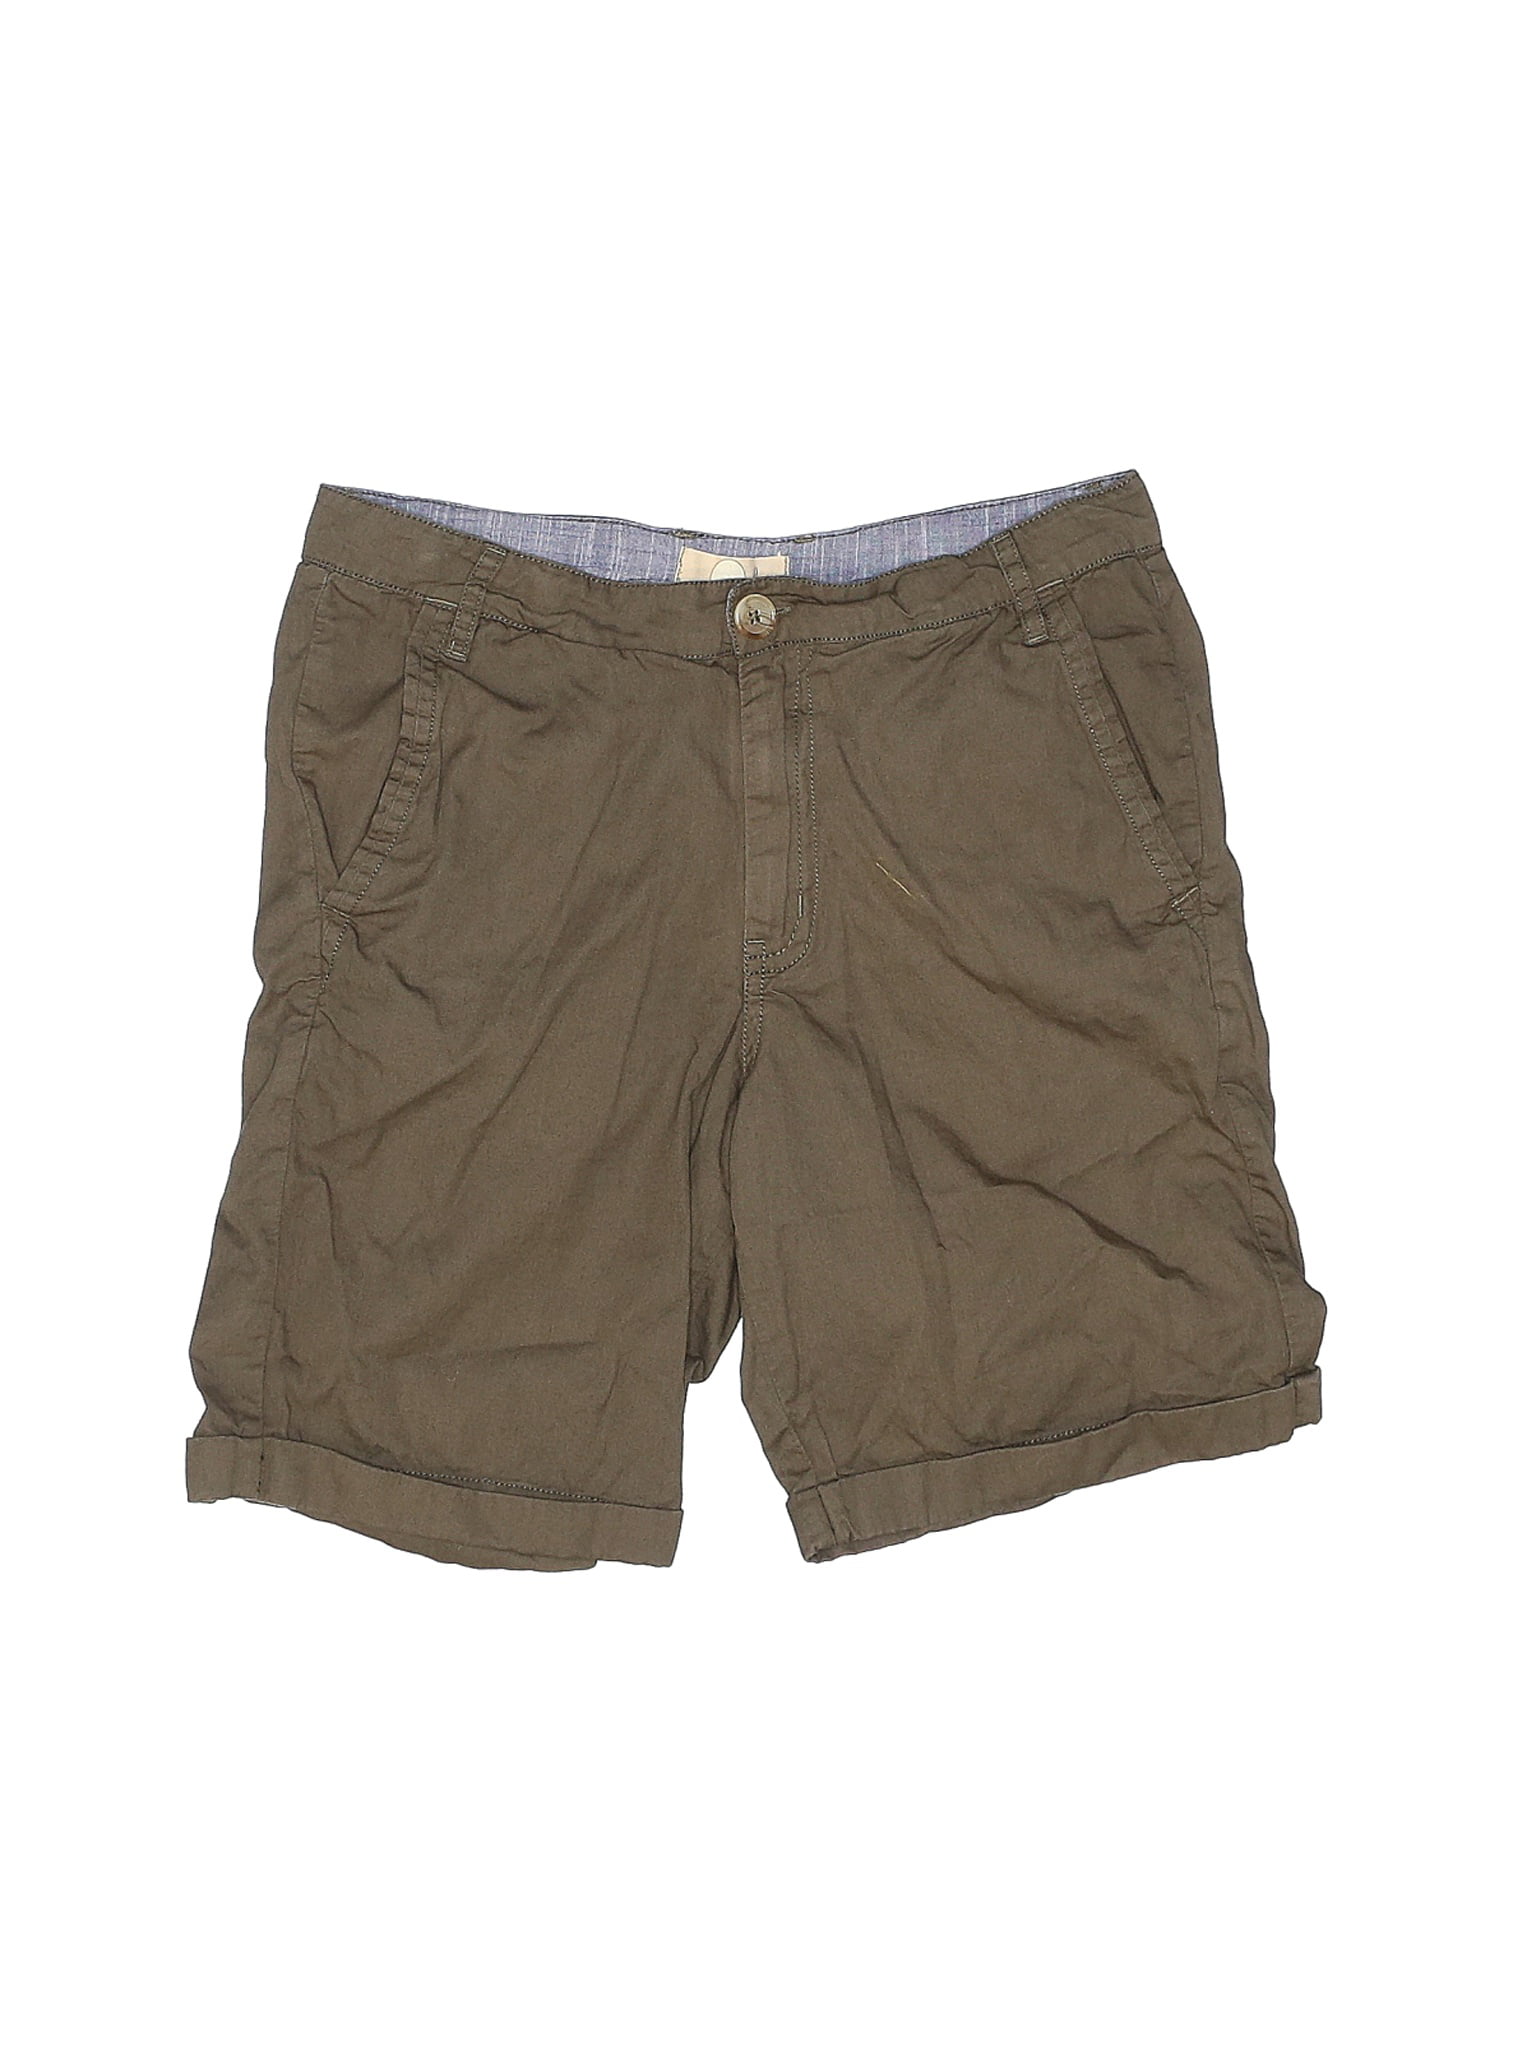 Peek... - Pre-Owned Peek... Boy's Size 12 Shorts - Walmart.com ...